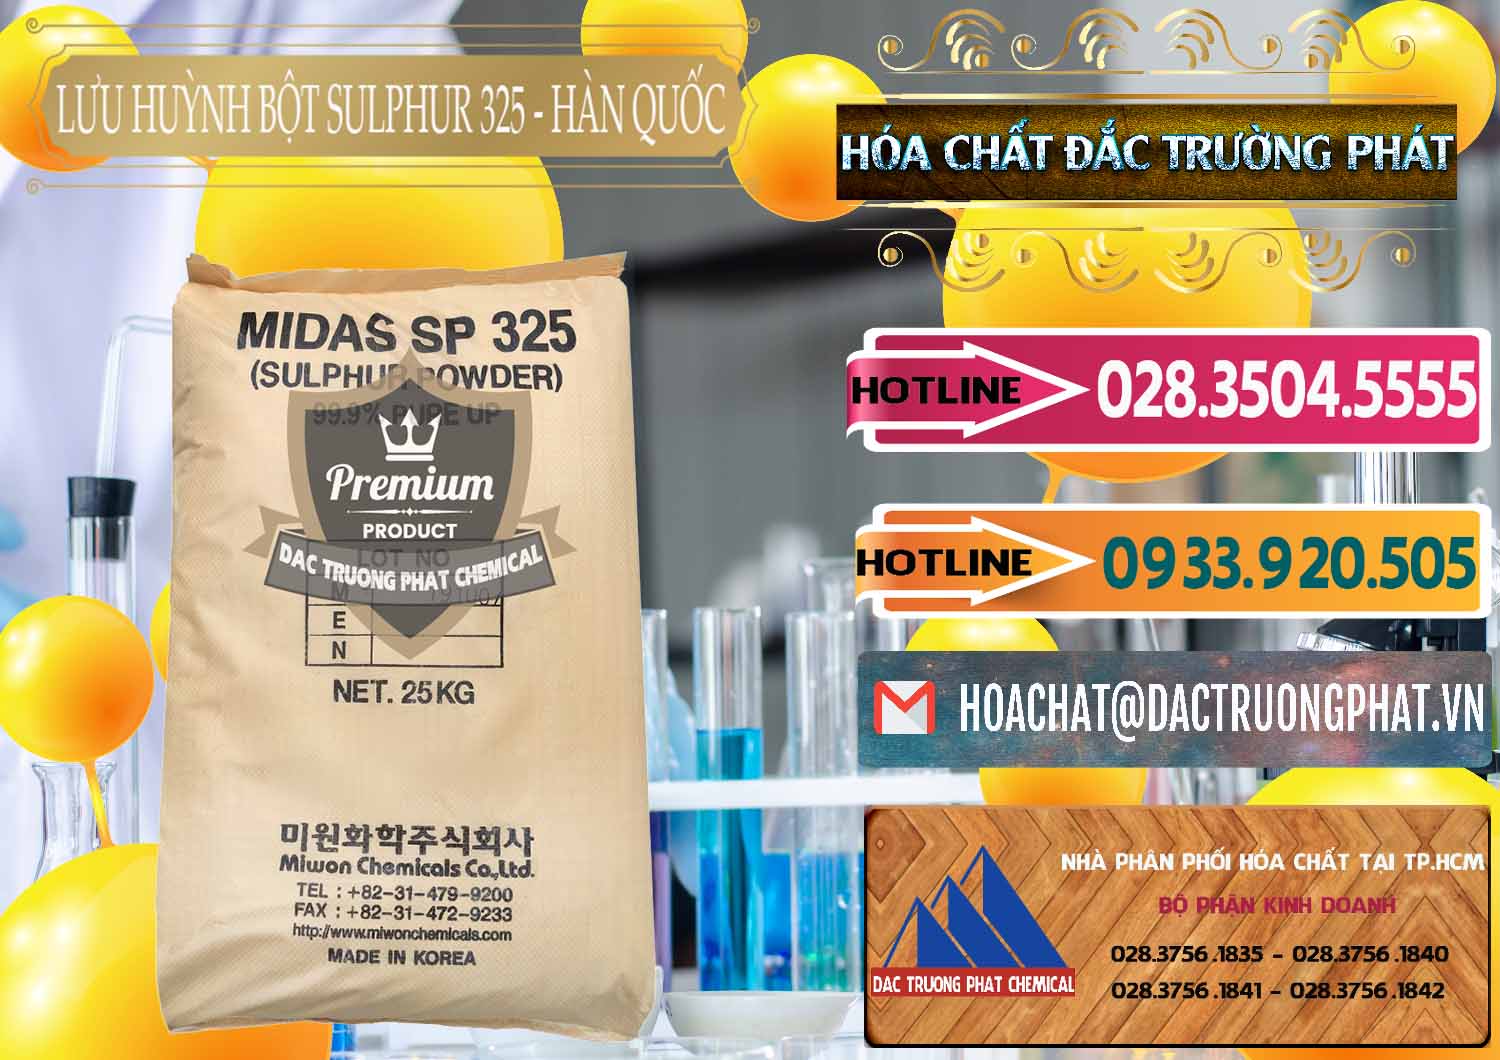 Cty bán - cung cấp Lưu huỳnh Bột - Sulfur Powder Midas SP 325 Hàn Quốc Korea - 0198 - Chuyên cung ứng ( phân phối ) hóa chất tại TP.HCM - dactruongphat.vn